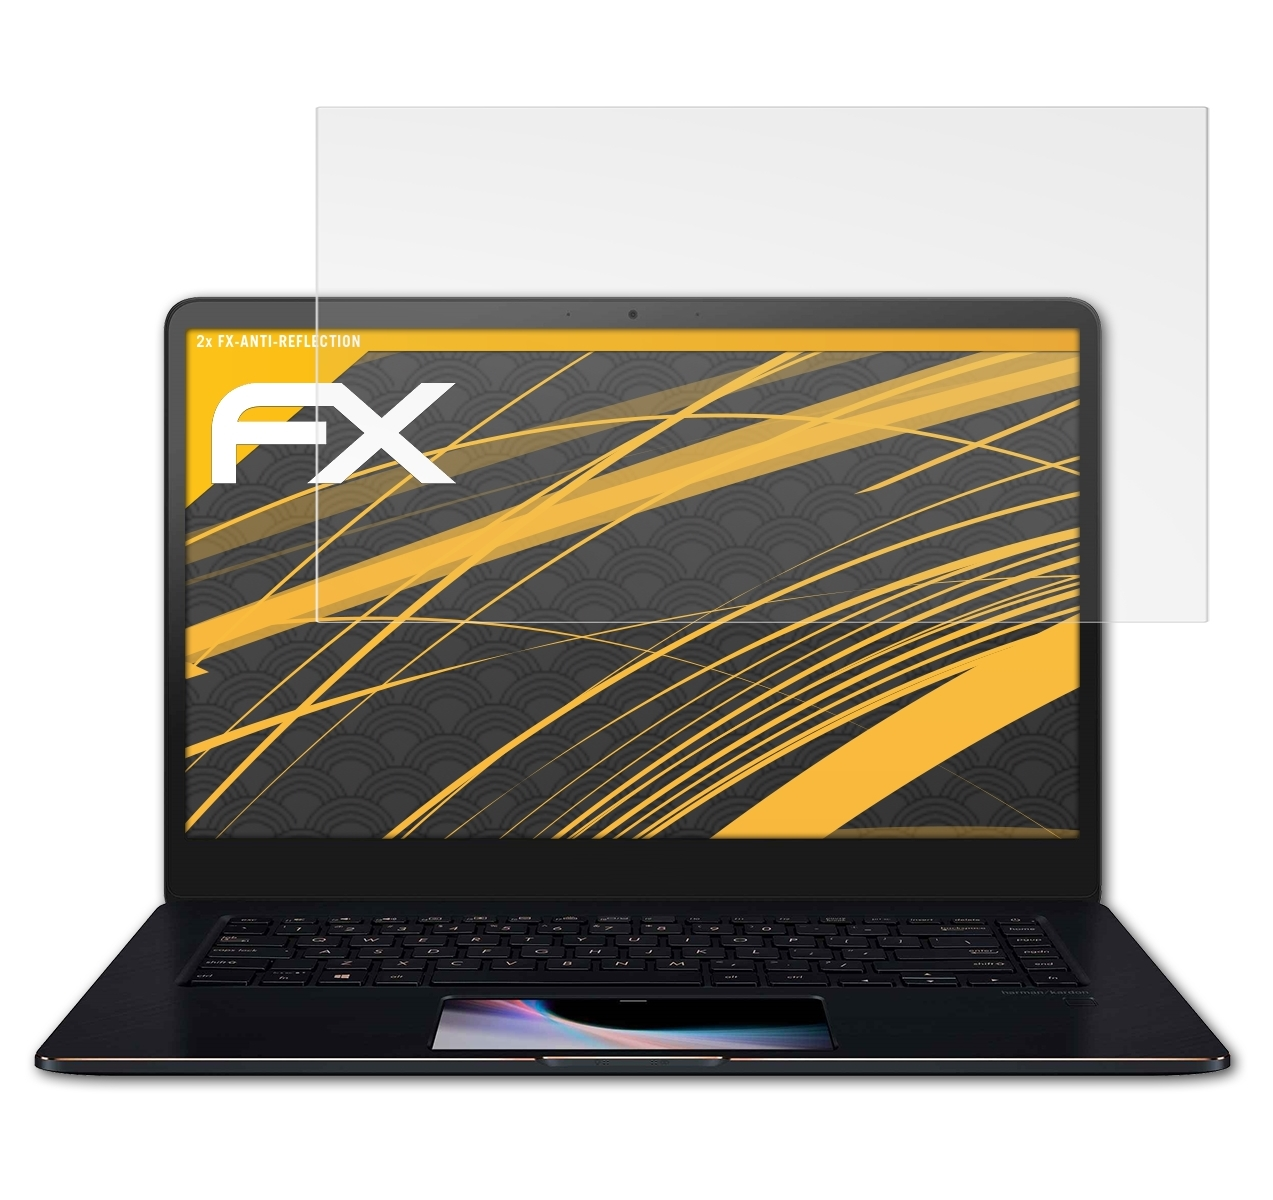 ATFOLIX 2x FX-Antireflex Asus 15 Displayschutz(für Pro ZenBook (UX550GD))